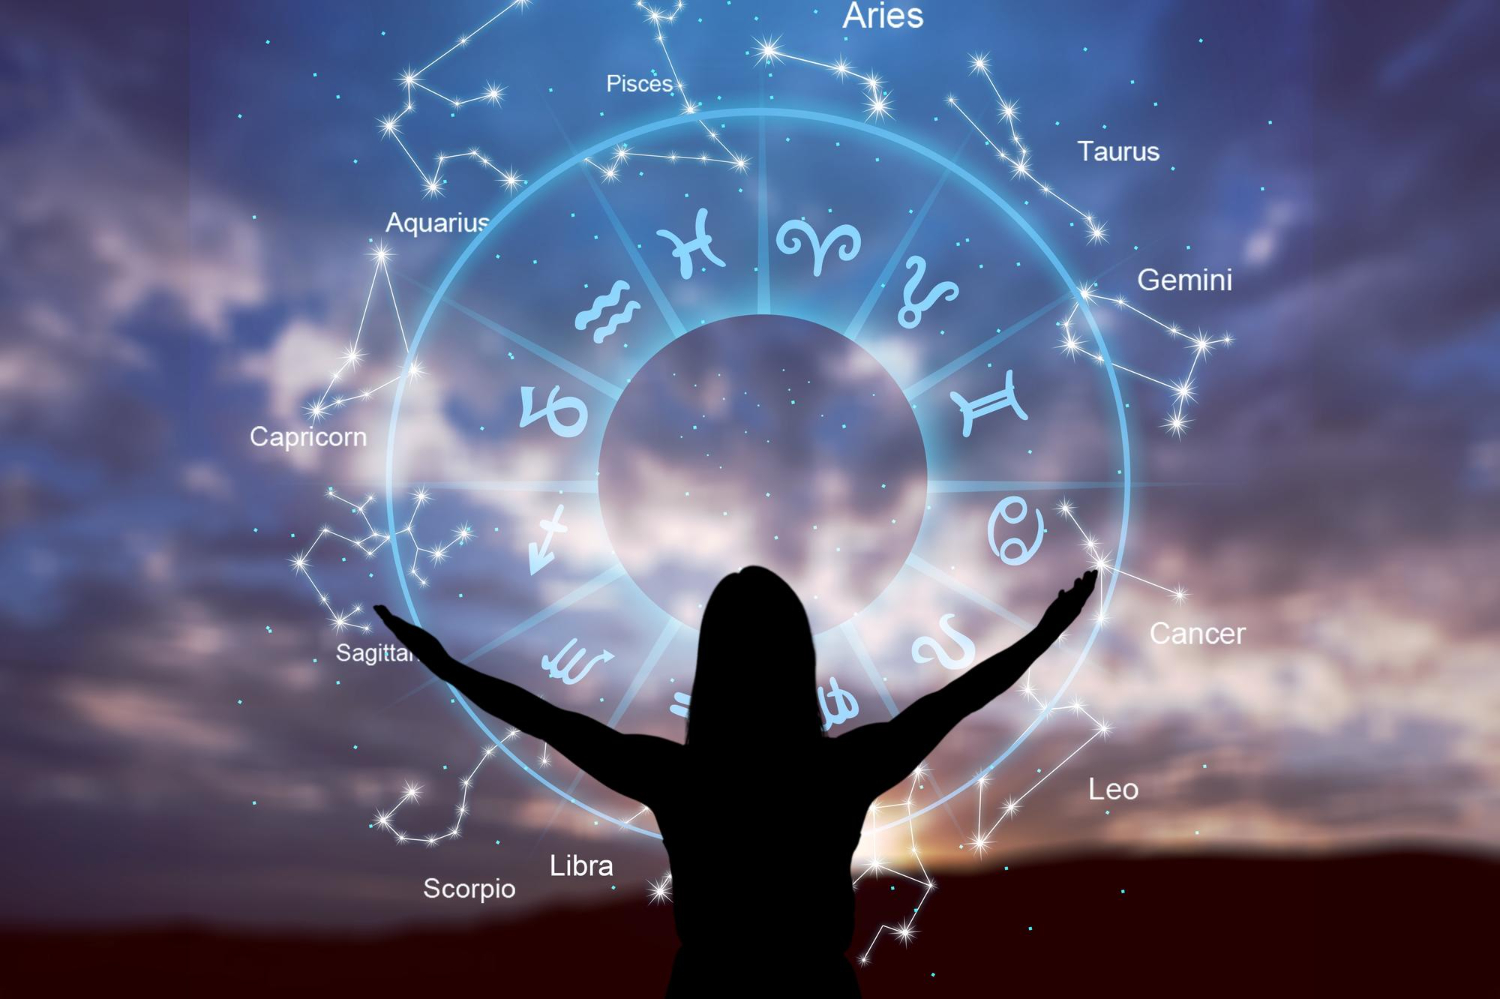 Grande evento astrológico em 4 de março de 2024; mudanças radicais para 4 signos do zodíaco